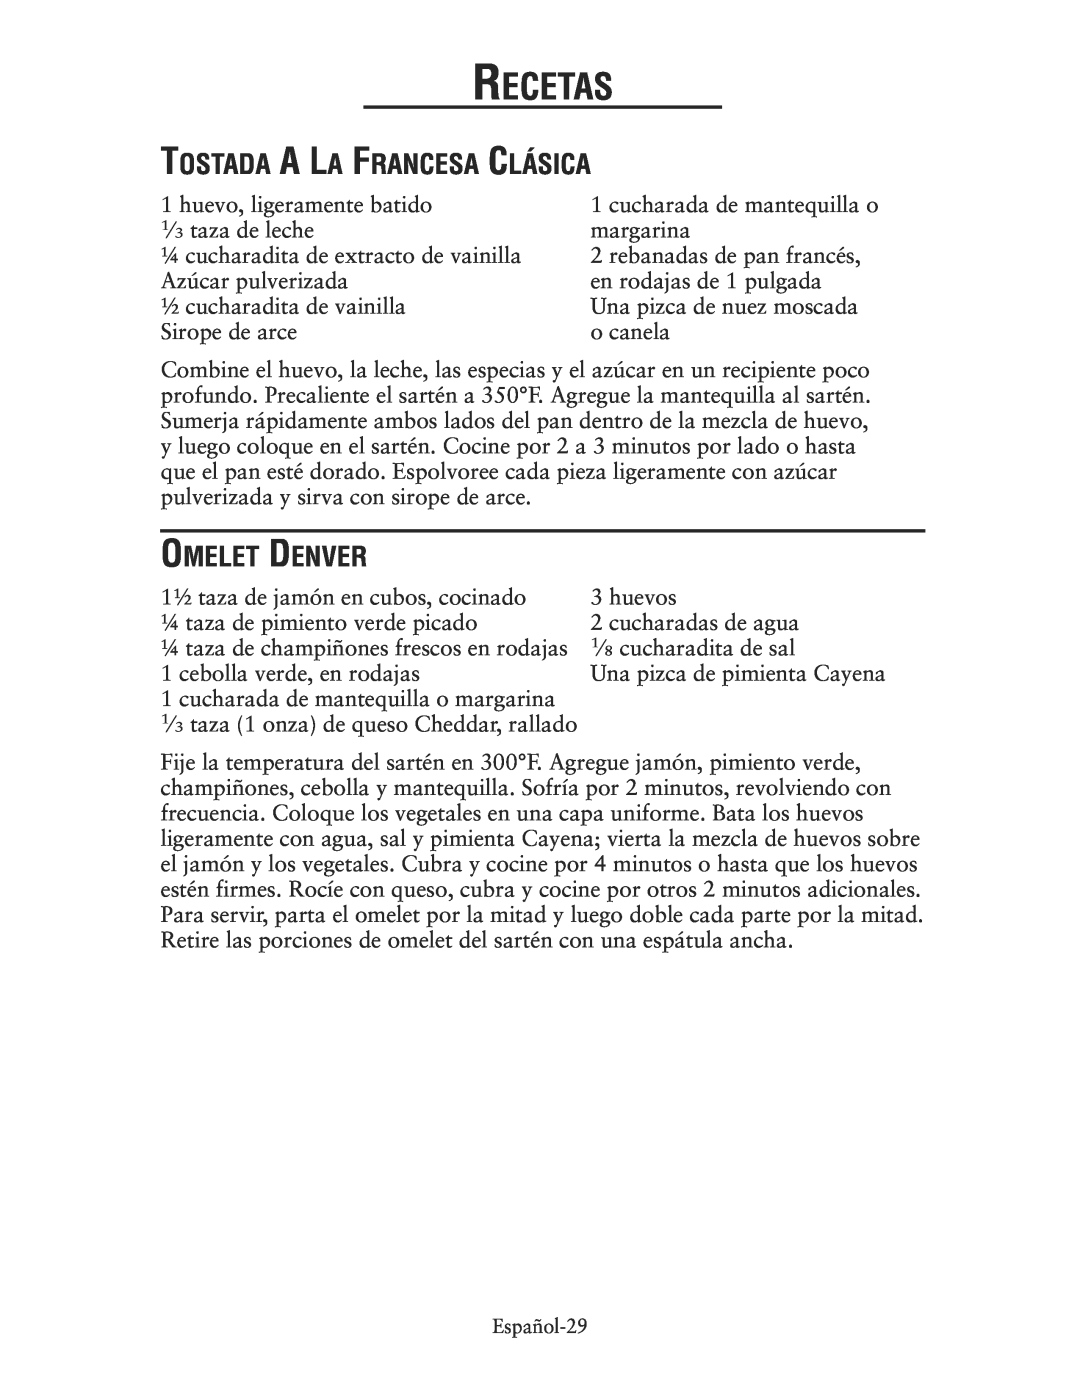 Oster CKSTSKRM20 user manual Tostada A La Francesa Clásica, Omelet Denver, Recetas 